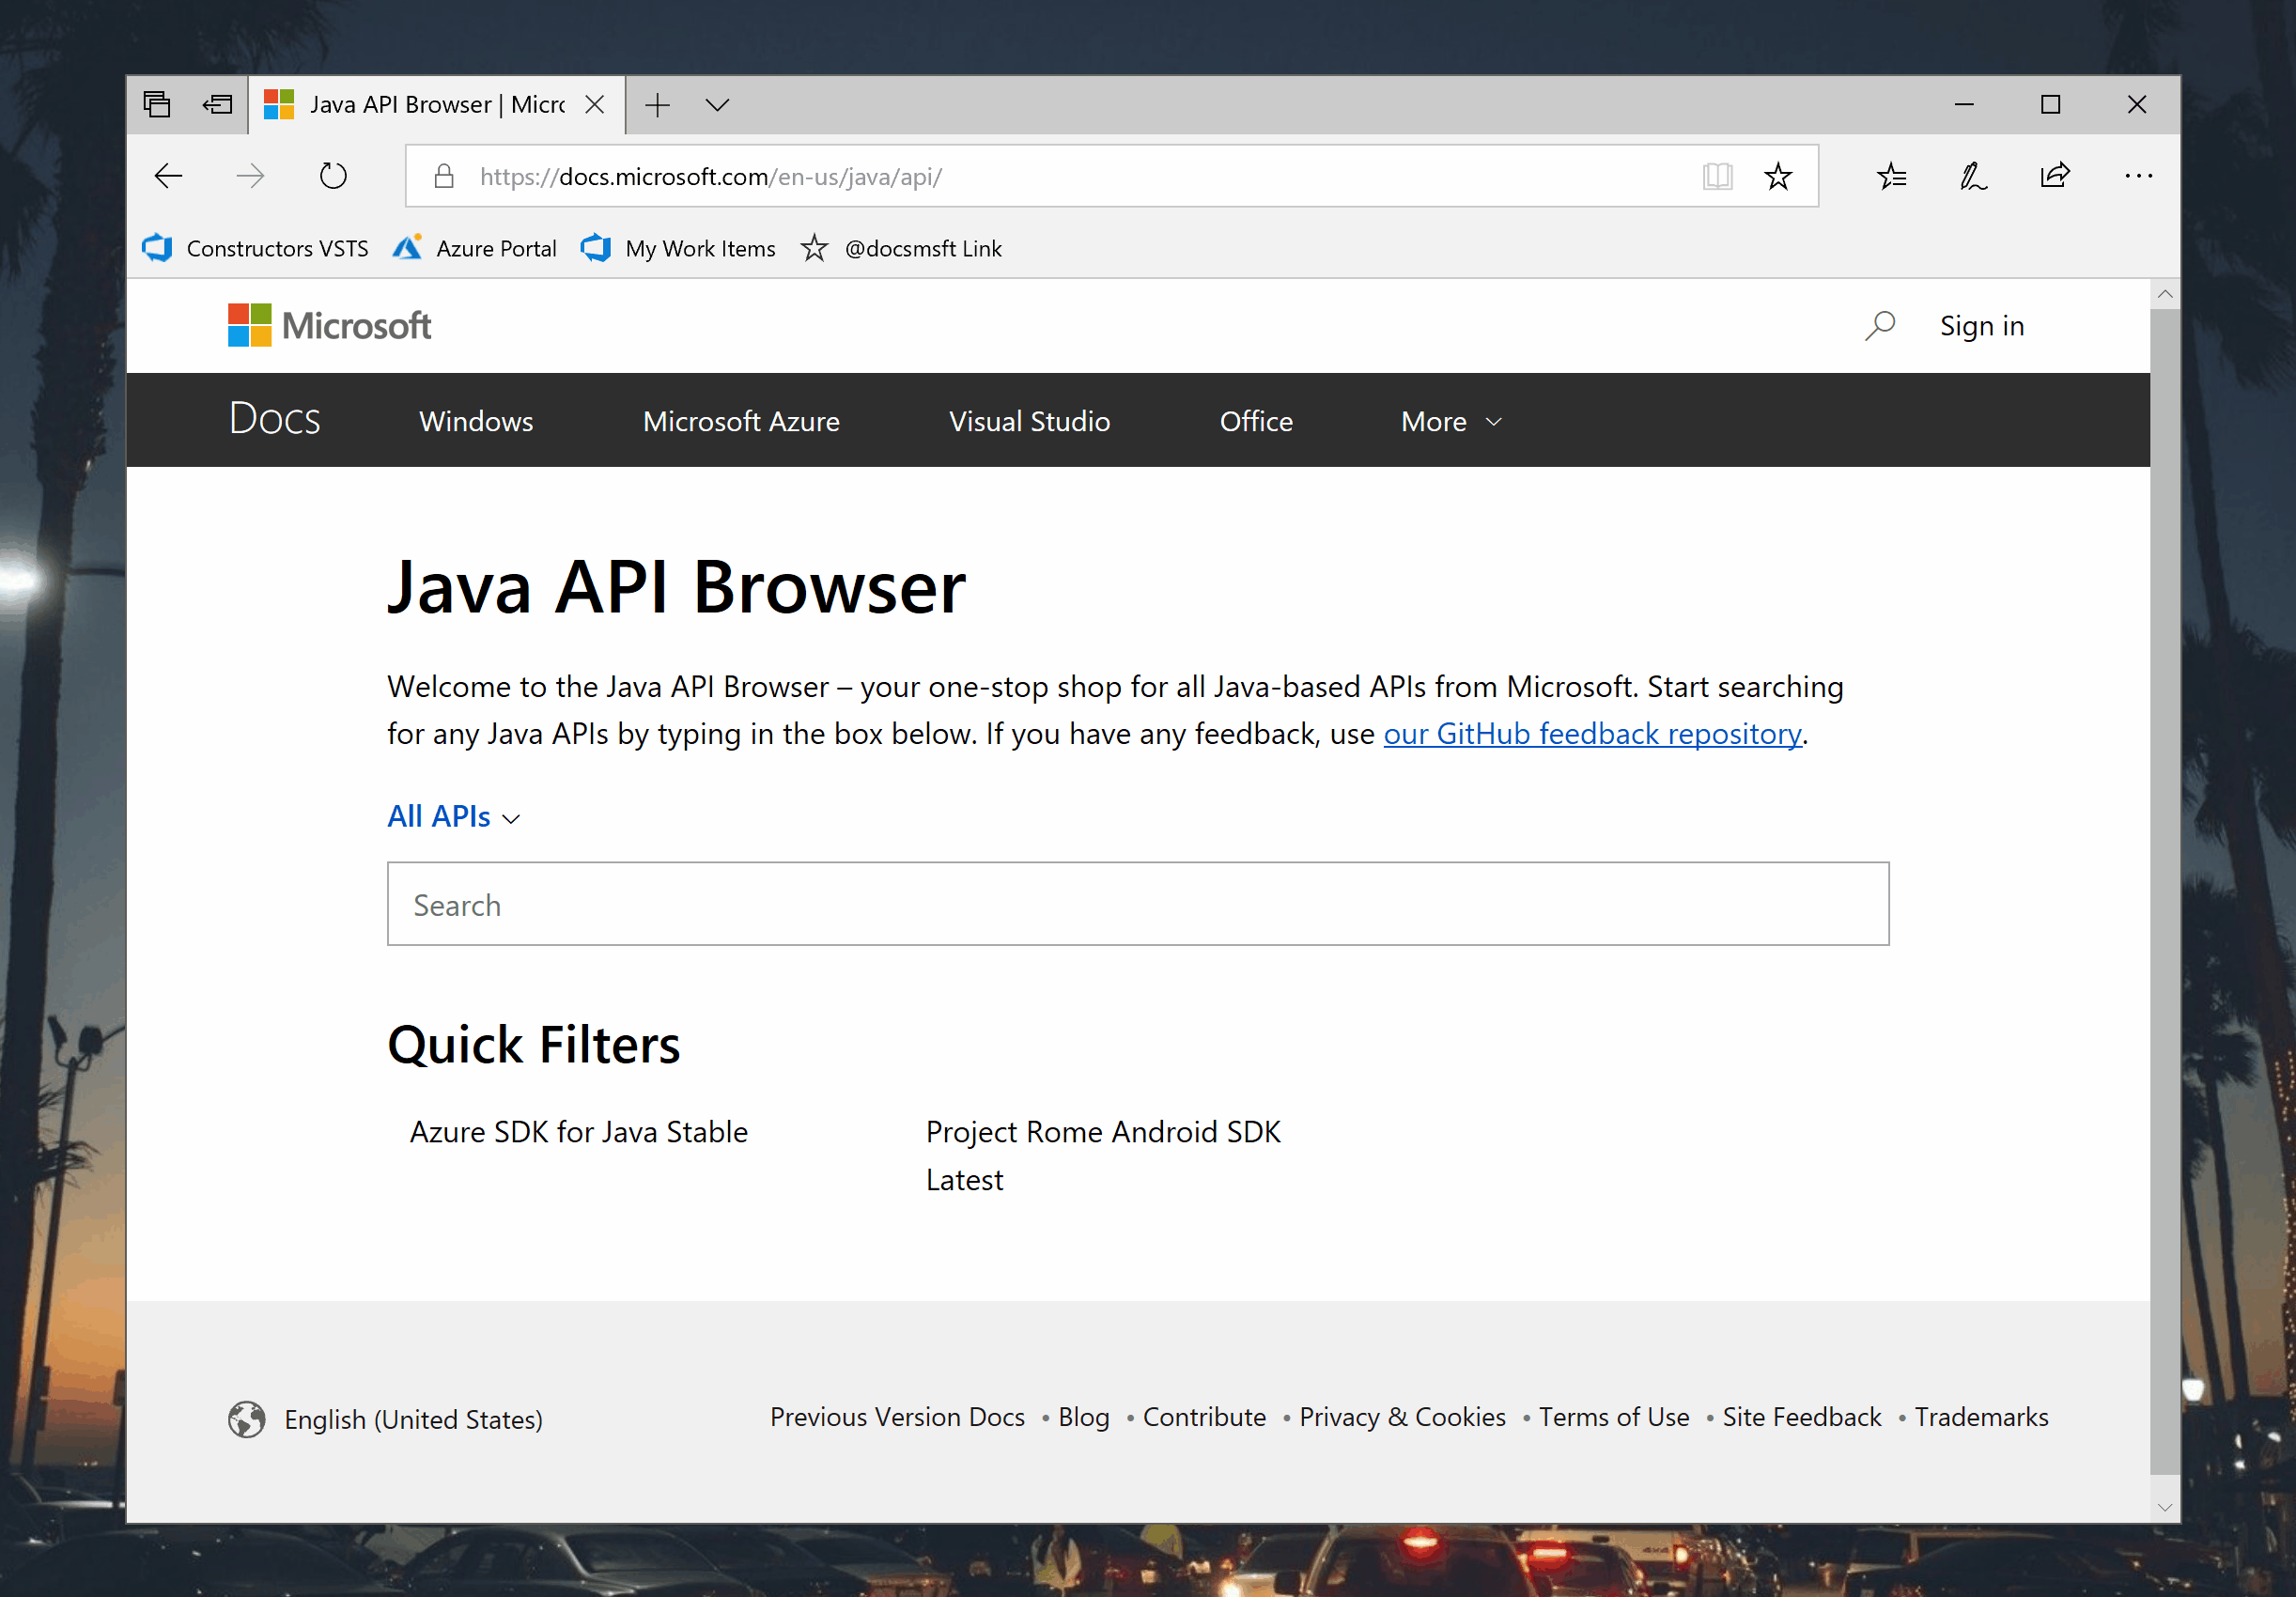 Java API Browser Usage